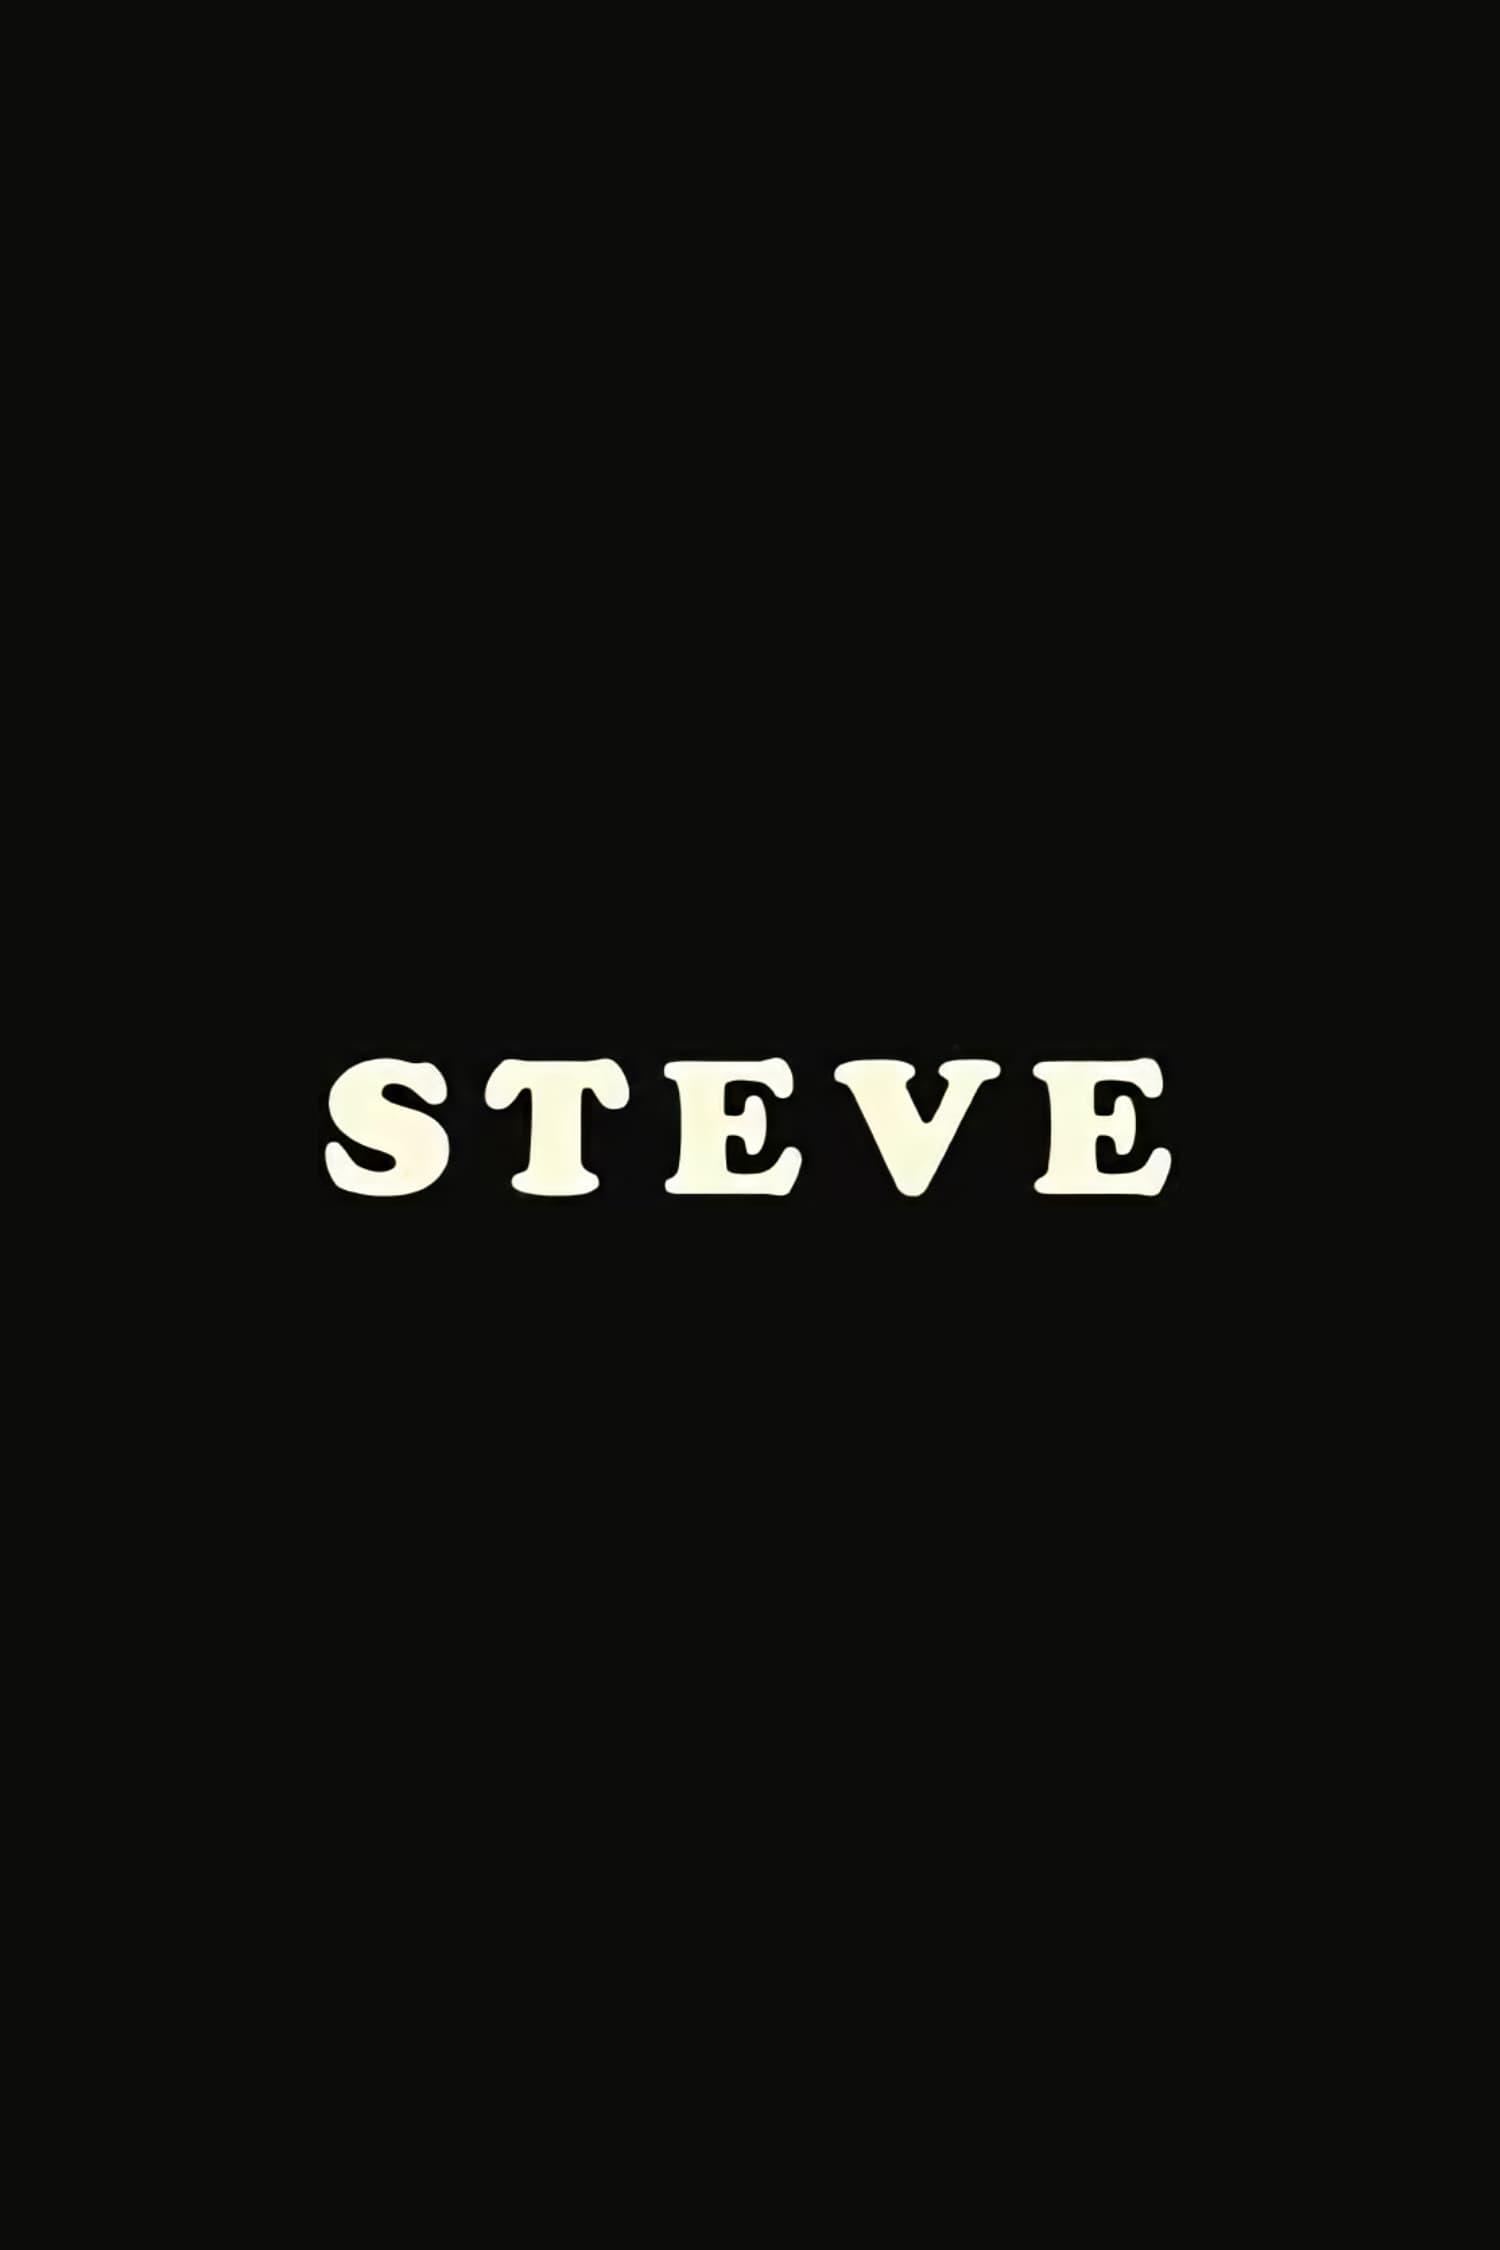 Steve poster